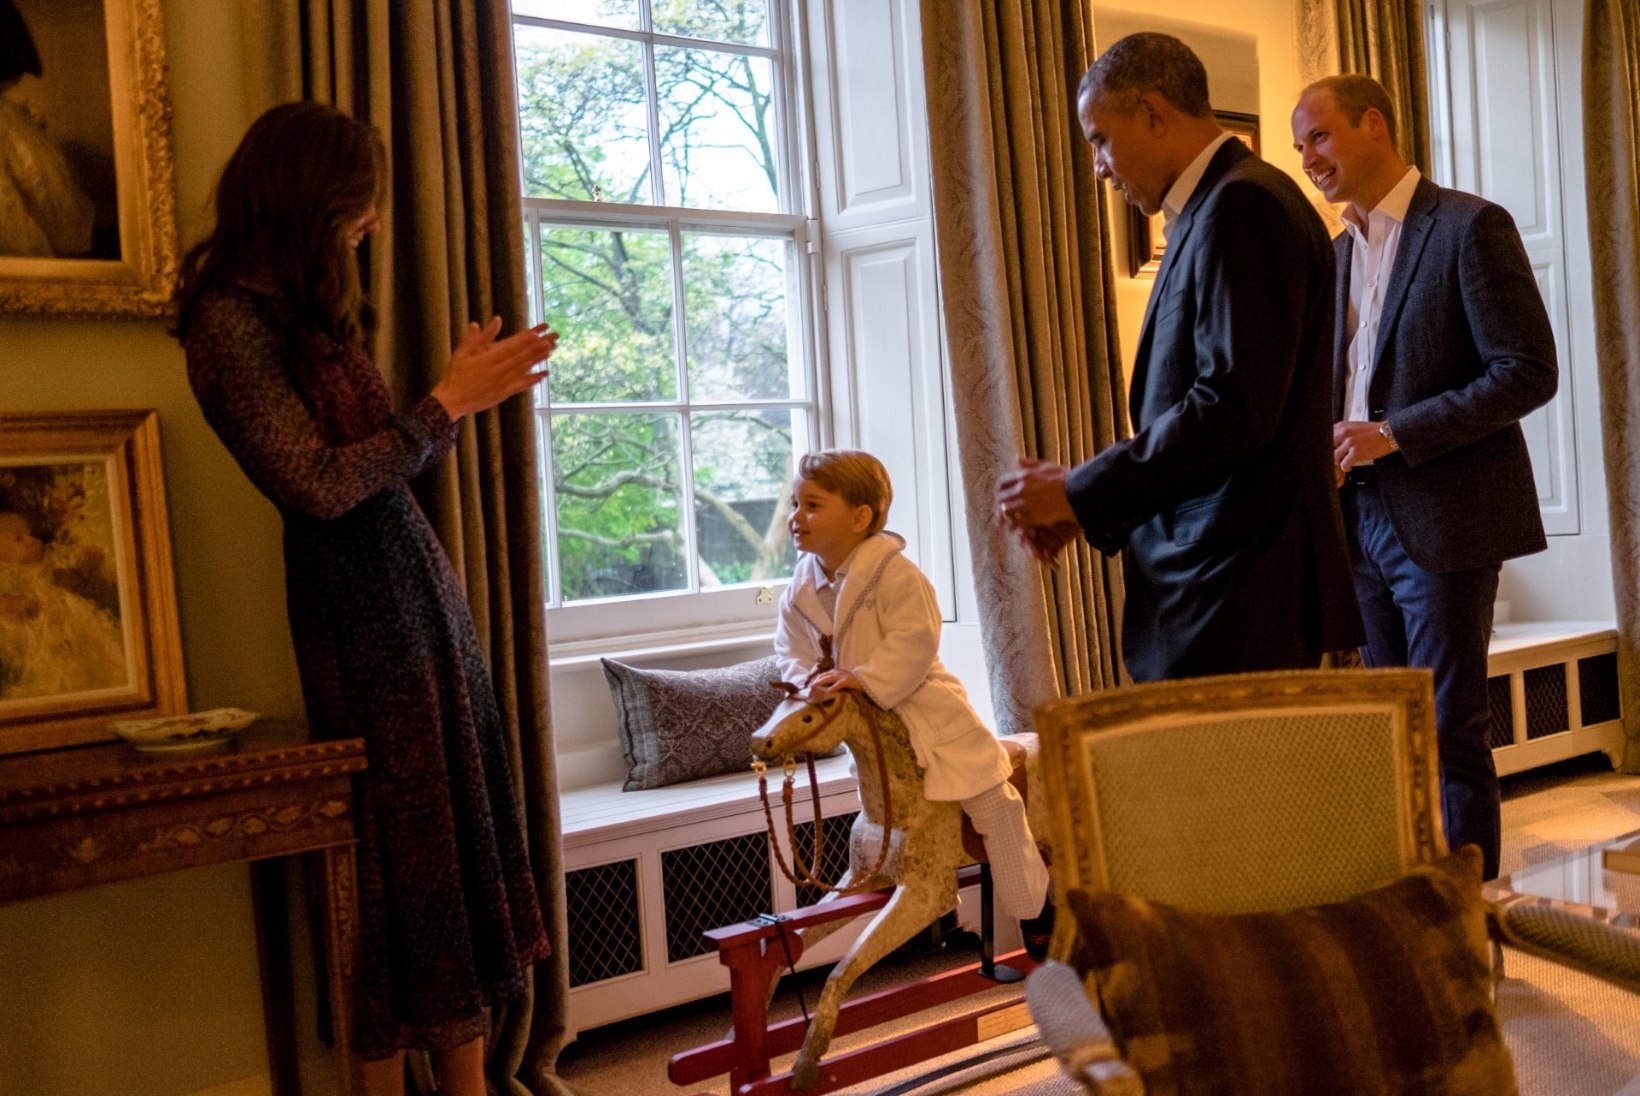 FOTOD | Briti pisiprints tänas Obamat, kes talle ligi kolm aastat tagasi kiikhobuse kinkis